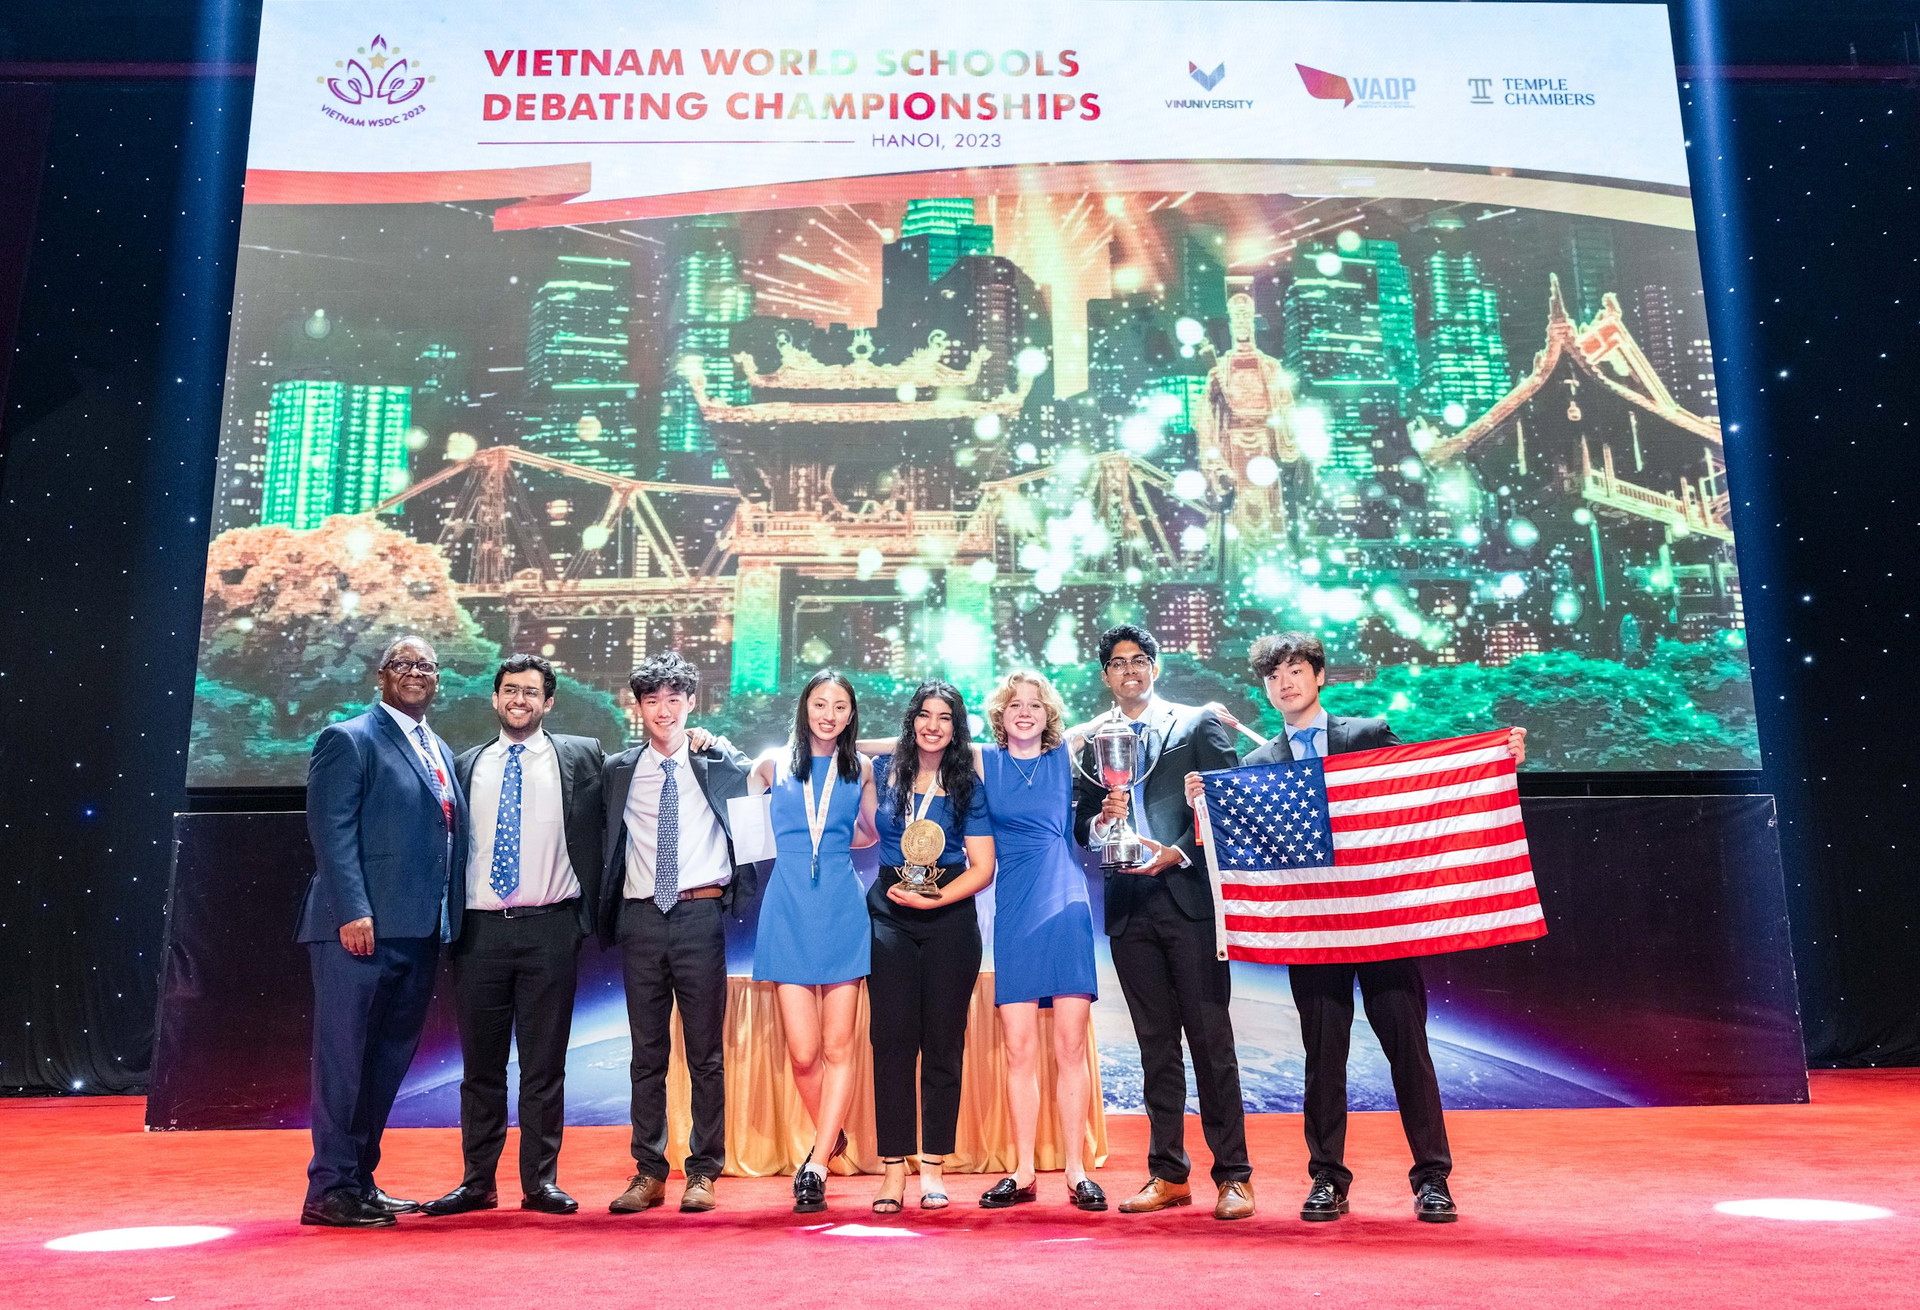 Giải đấu tranh biện lớn nhất thế giới WSDC 2023 chính thức khép lại: Mỹ giành chức vô địch, thứ hạng của đội tuyển Việt Nam gây bất ngờ lớn
